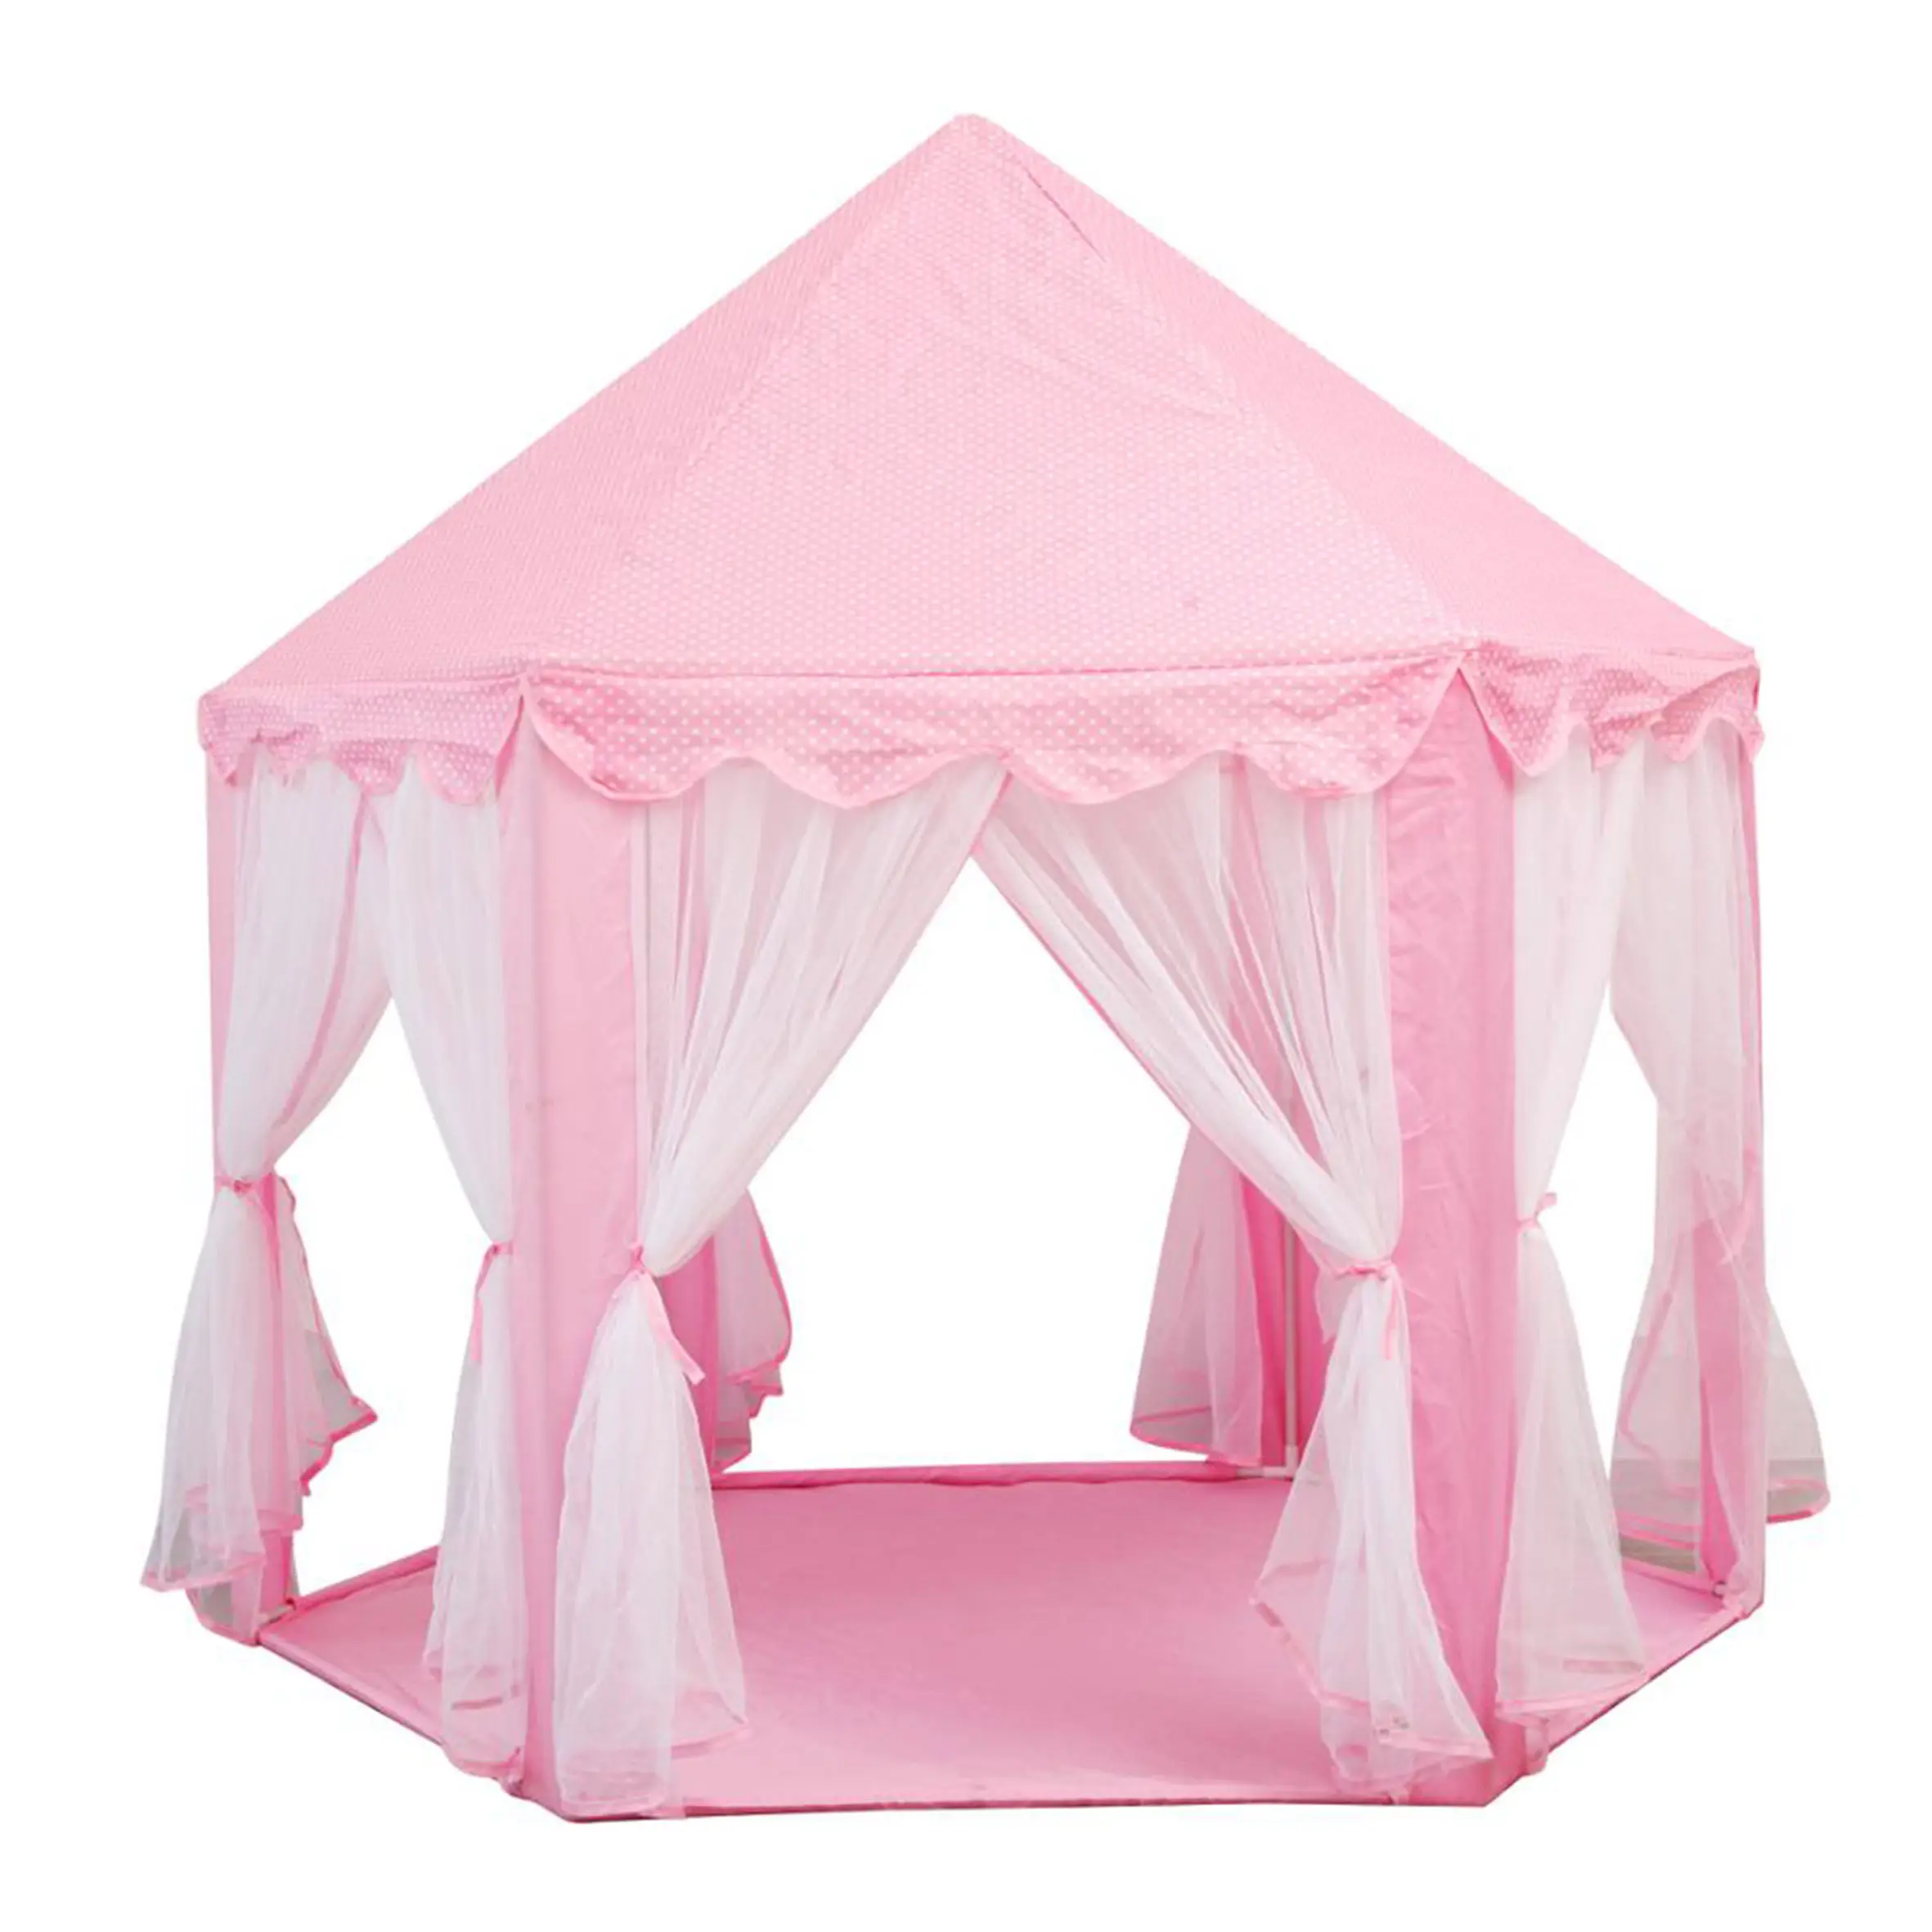 Boys prens kale perde tatlı ev çocuklar, çadır kapalı Yurt hint Teepee Pop Up Playhouse bebek için/